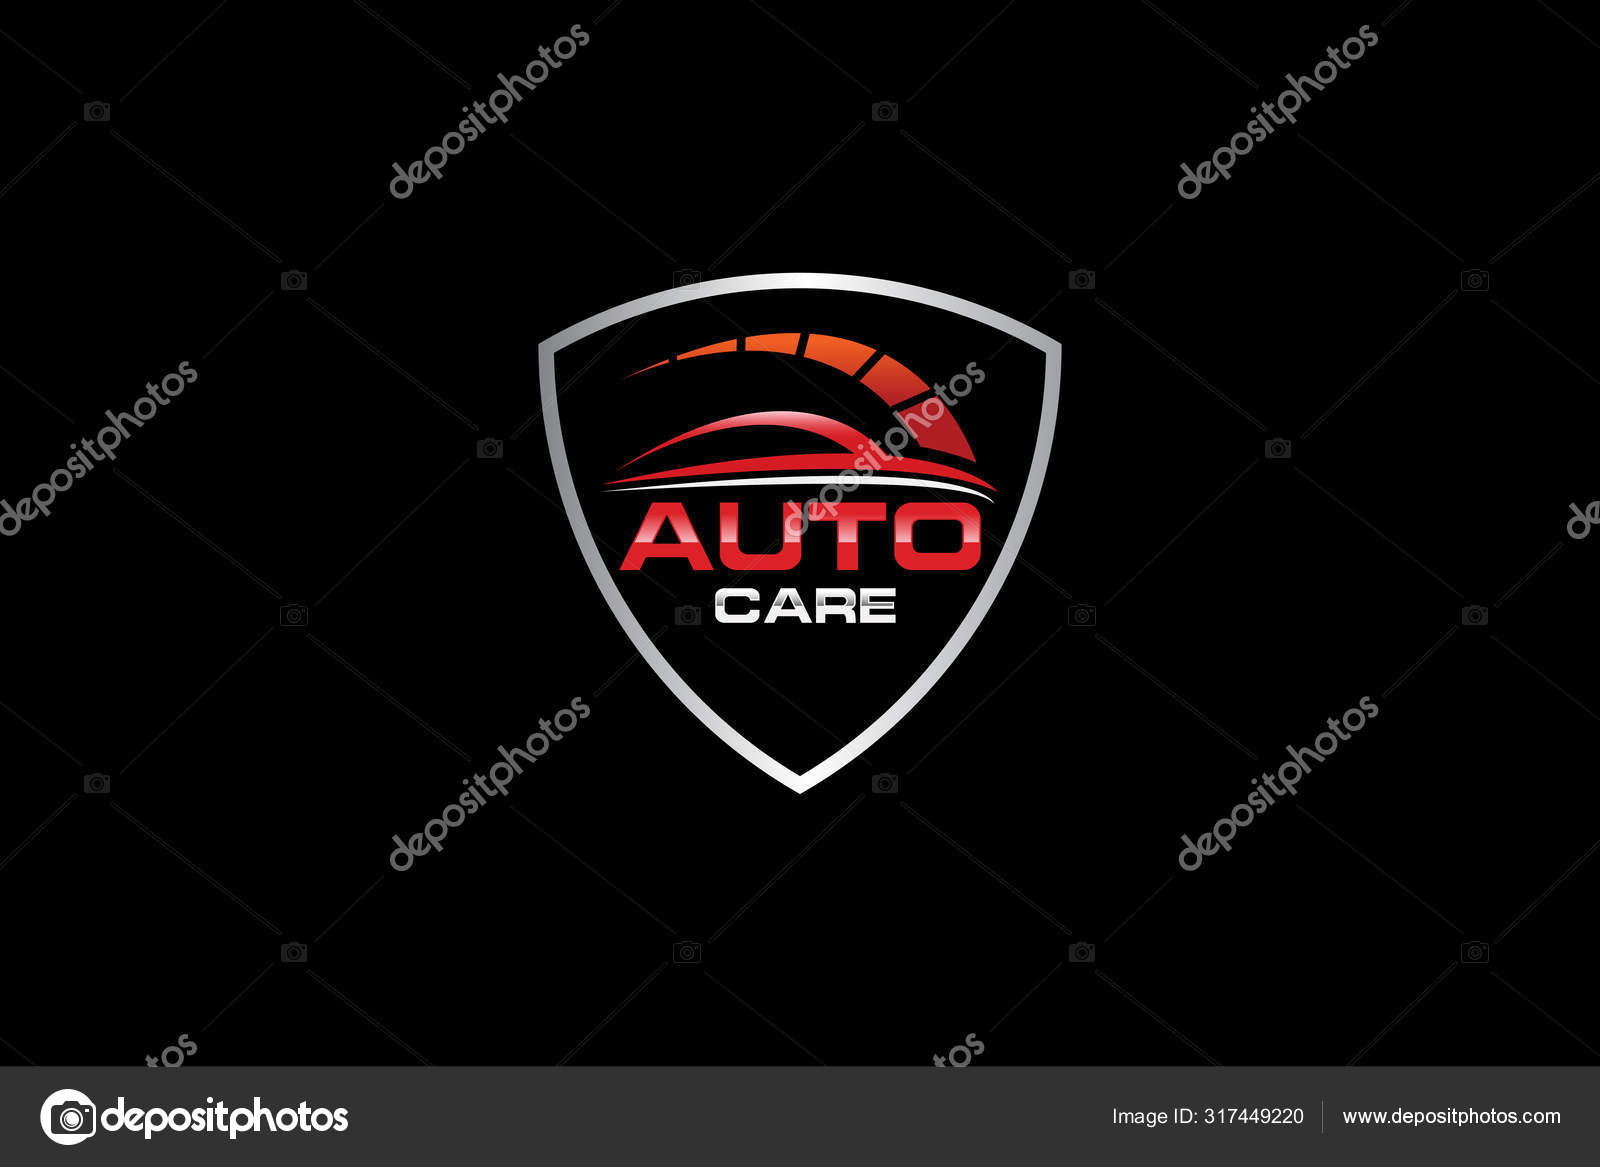 Auto Logo Vektorgrafiken und Vektor-Icons zum kostenlosen Download